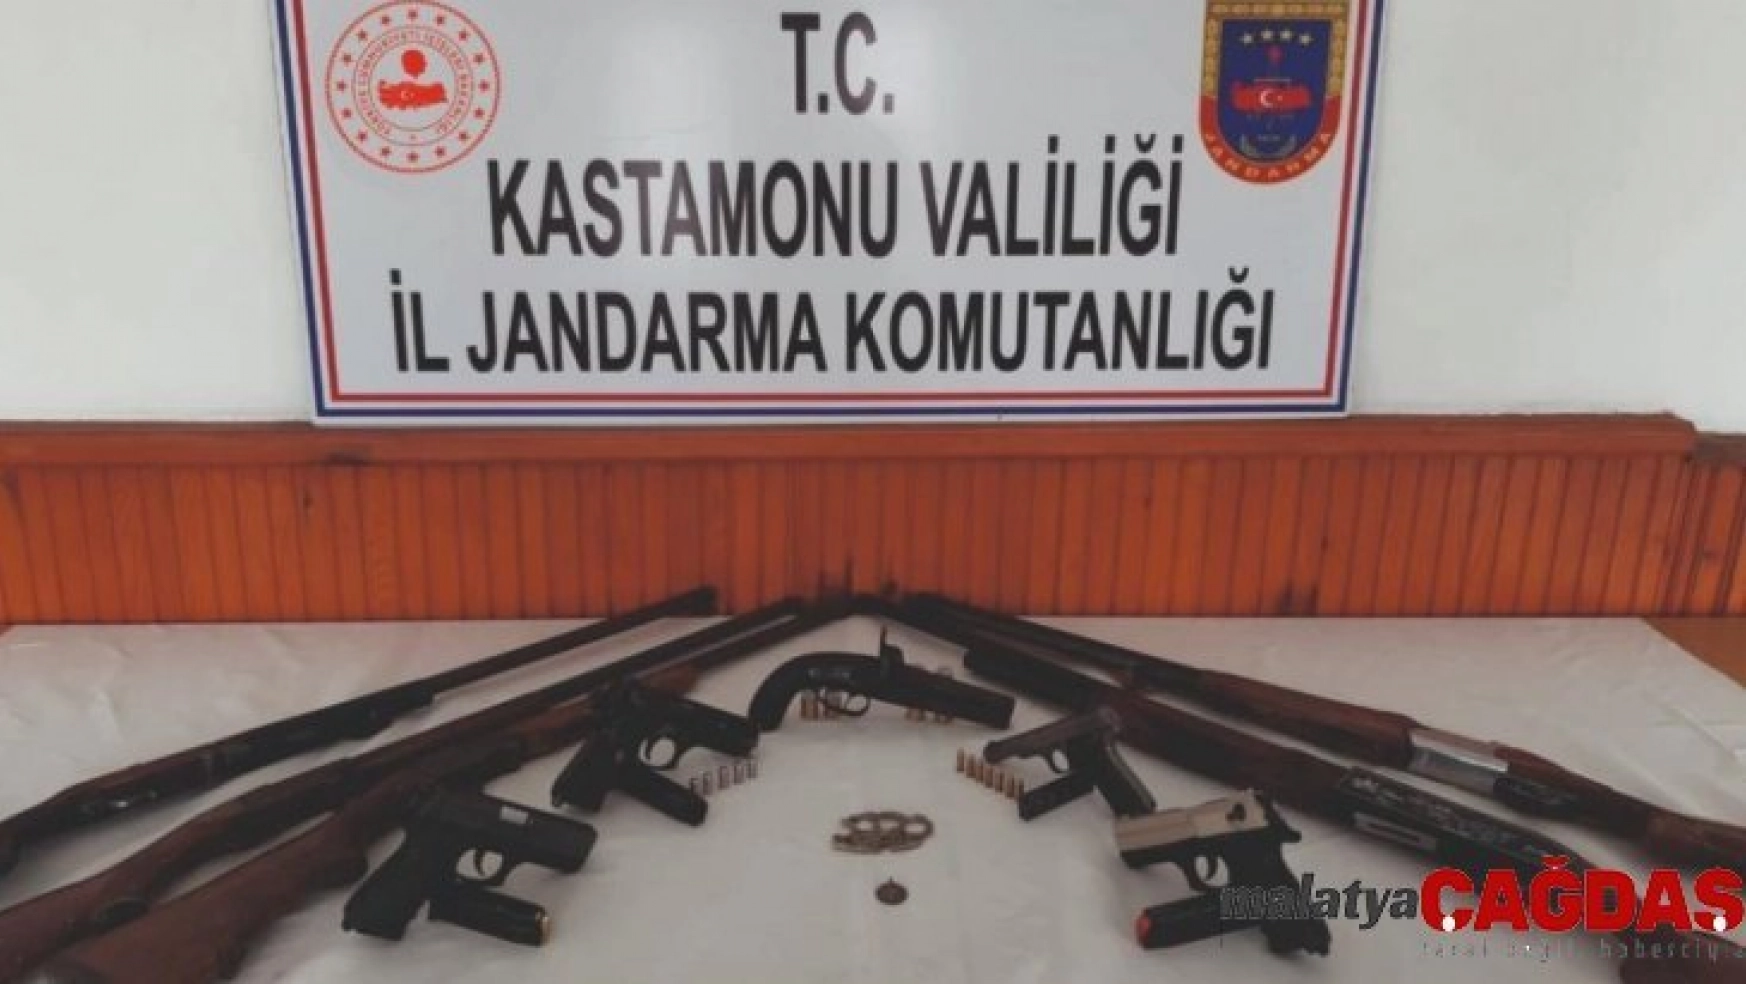 Kastamonu'daki silah kaçakçılığı operasyonunda 3 tutuklama